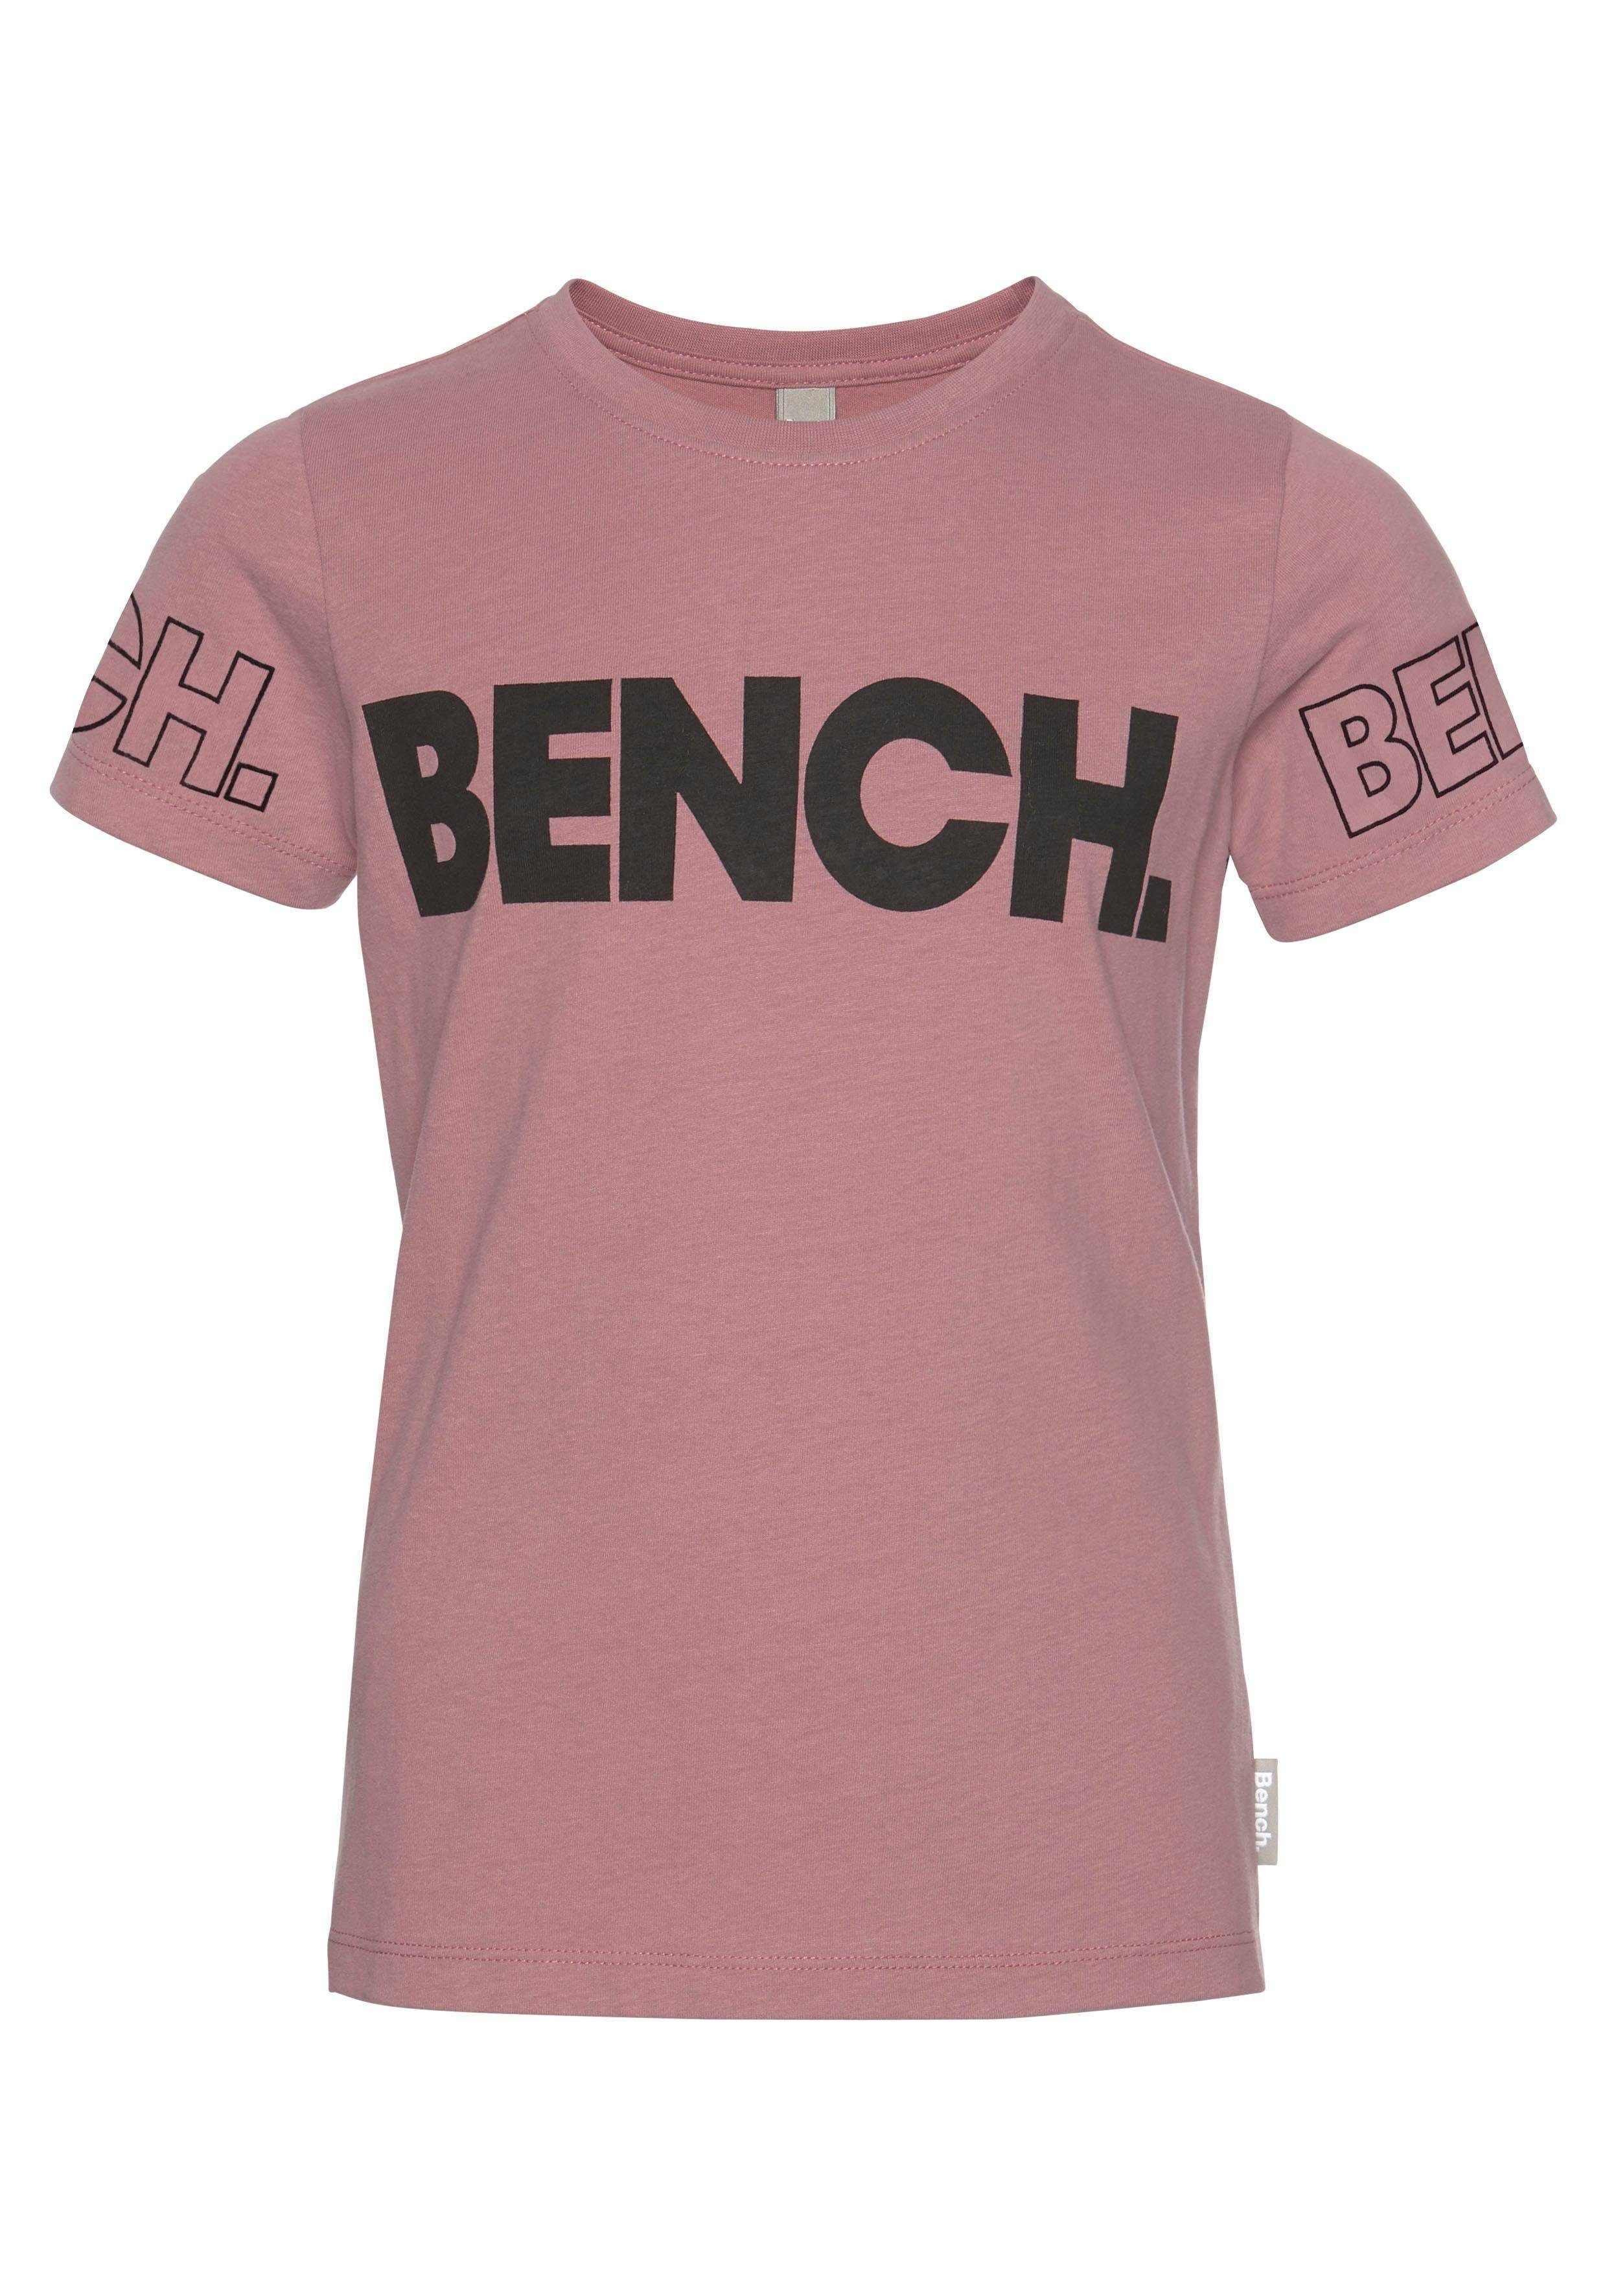 Bench. T-Shirt mit Bench-Logo-Drucken